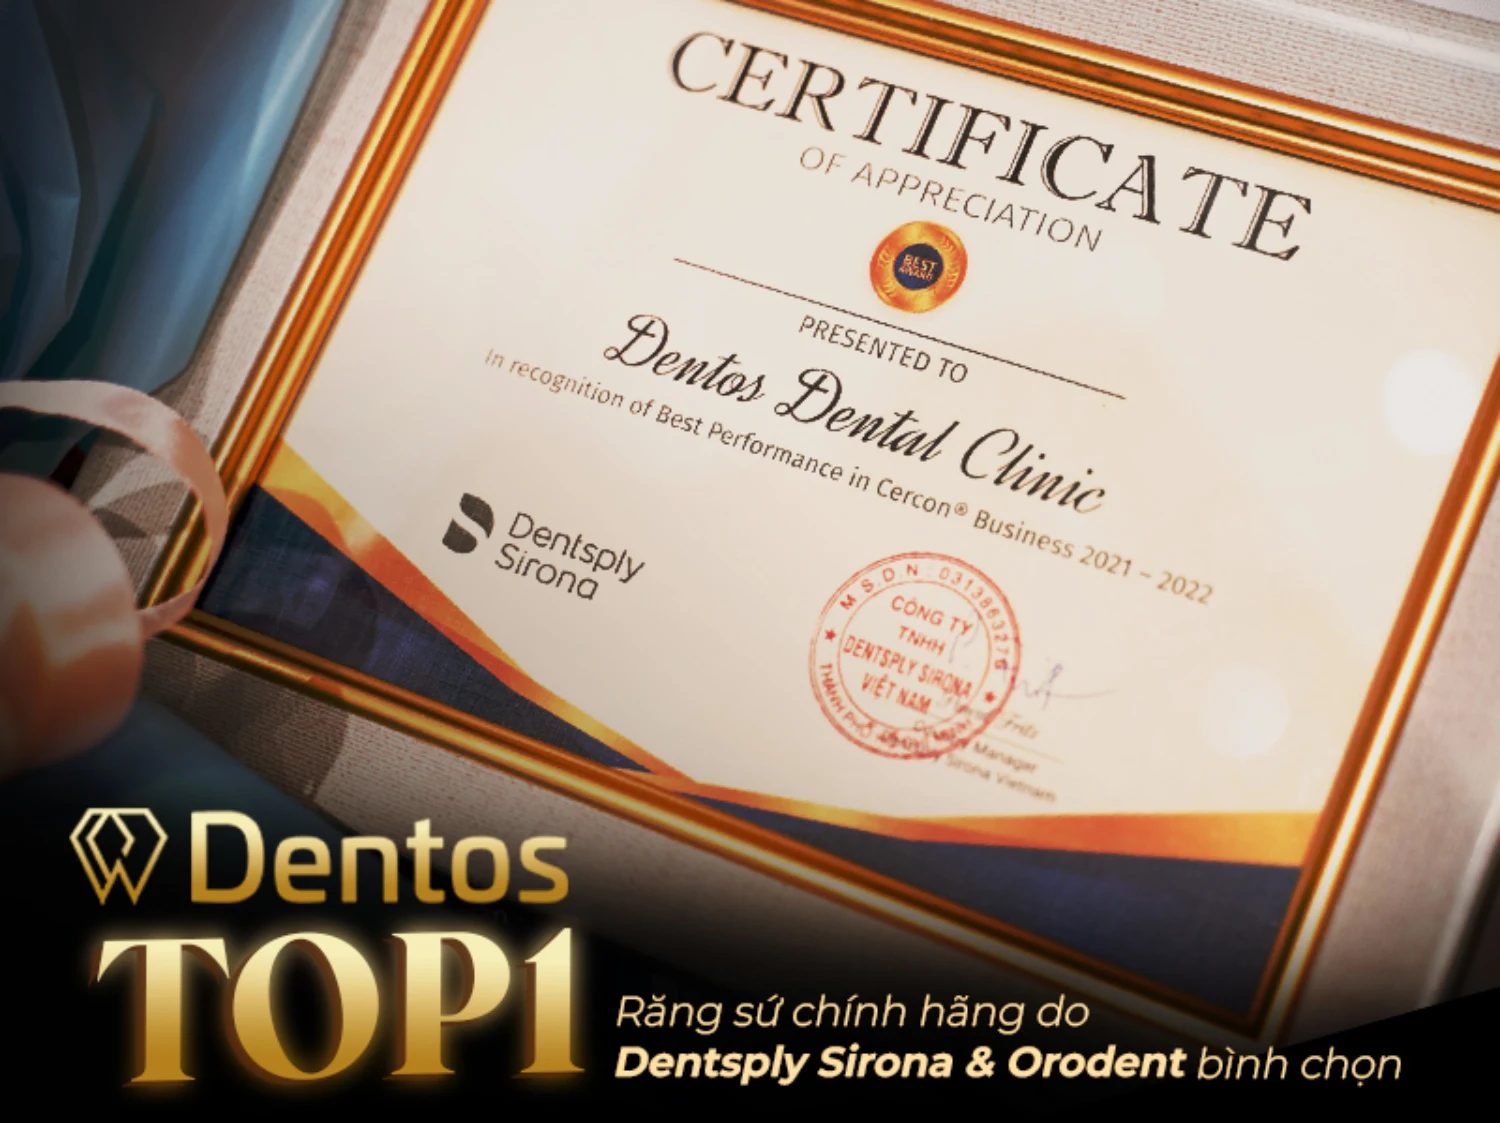 Nha khoa Dentos luôn cung cấp các loại răng sứ trên thị trường được nhập khẩu chính hãng